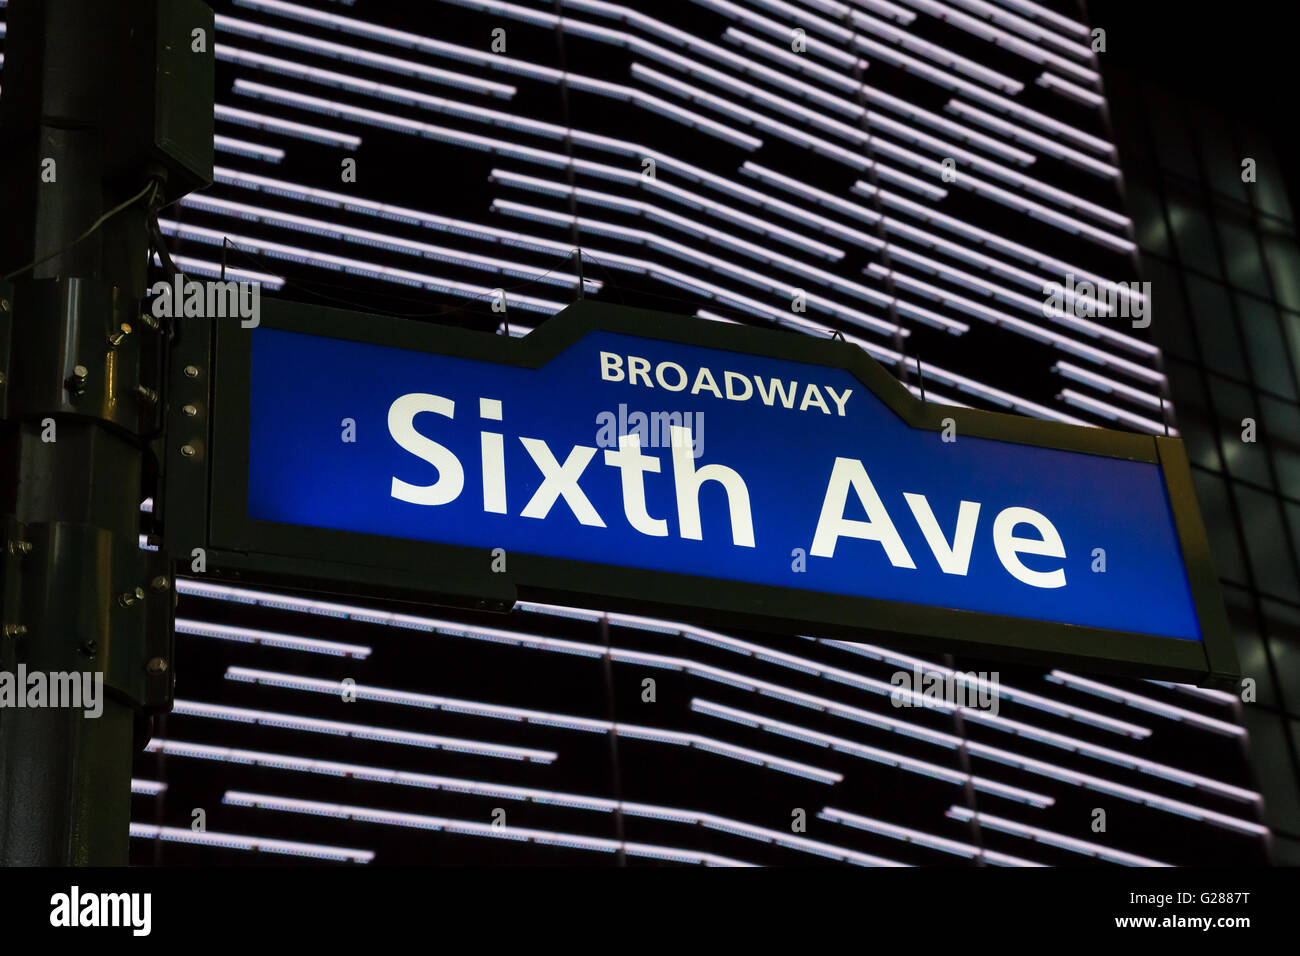 Illuminated Sixth Avenue street sign in New York City, USA Stock Photo